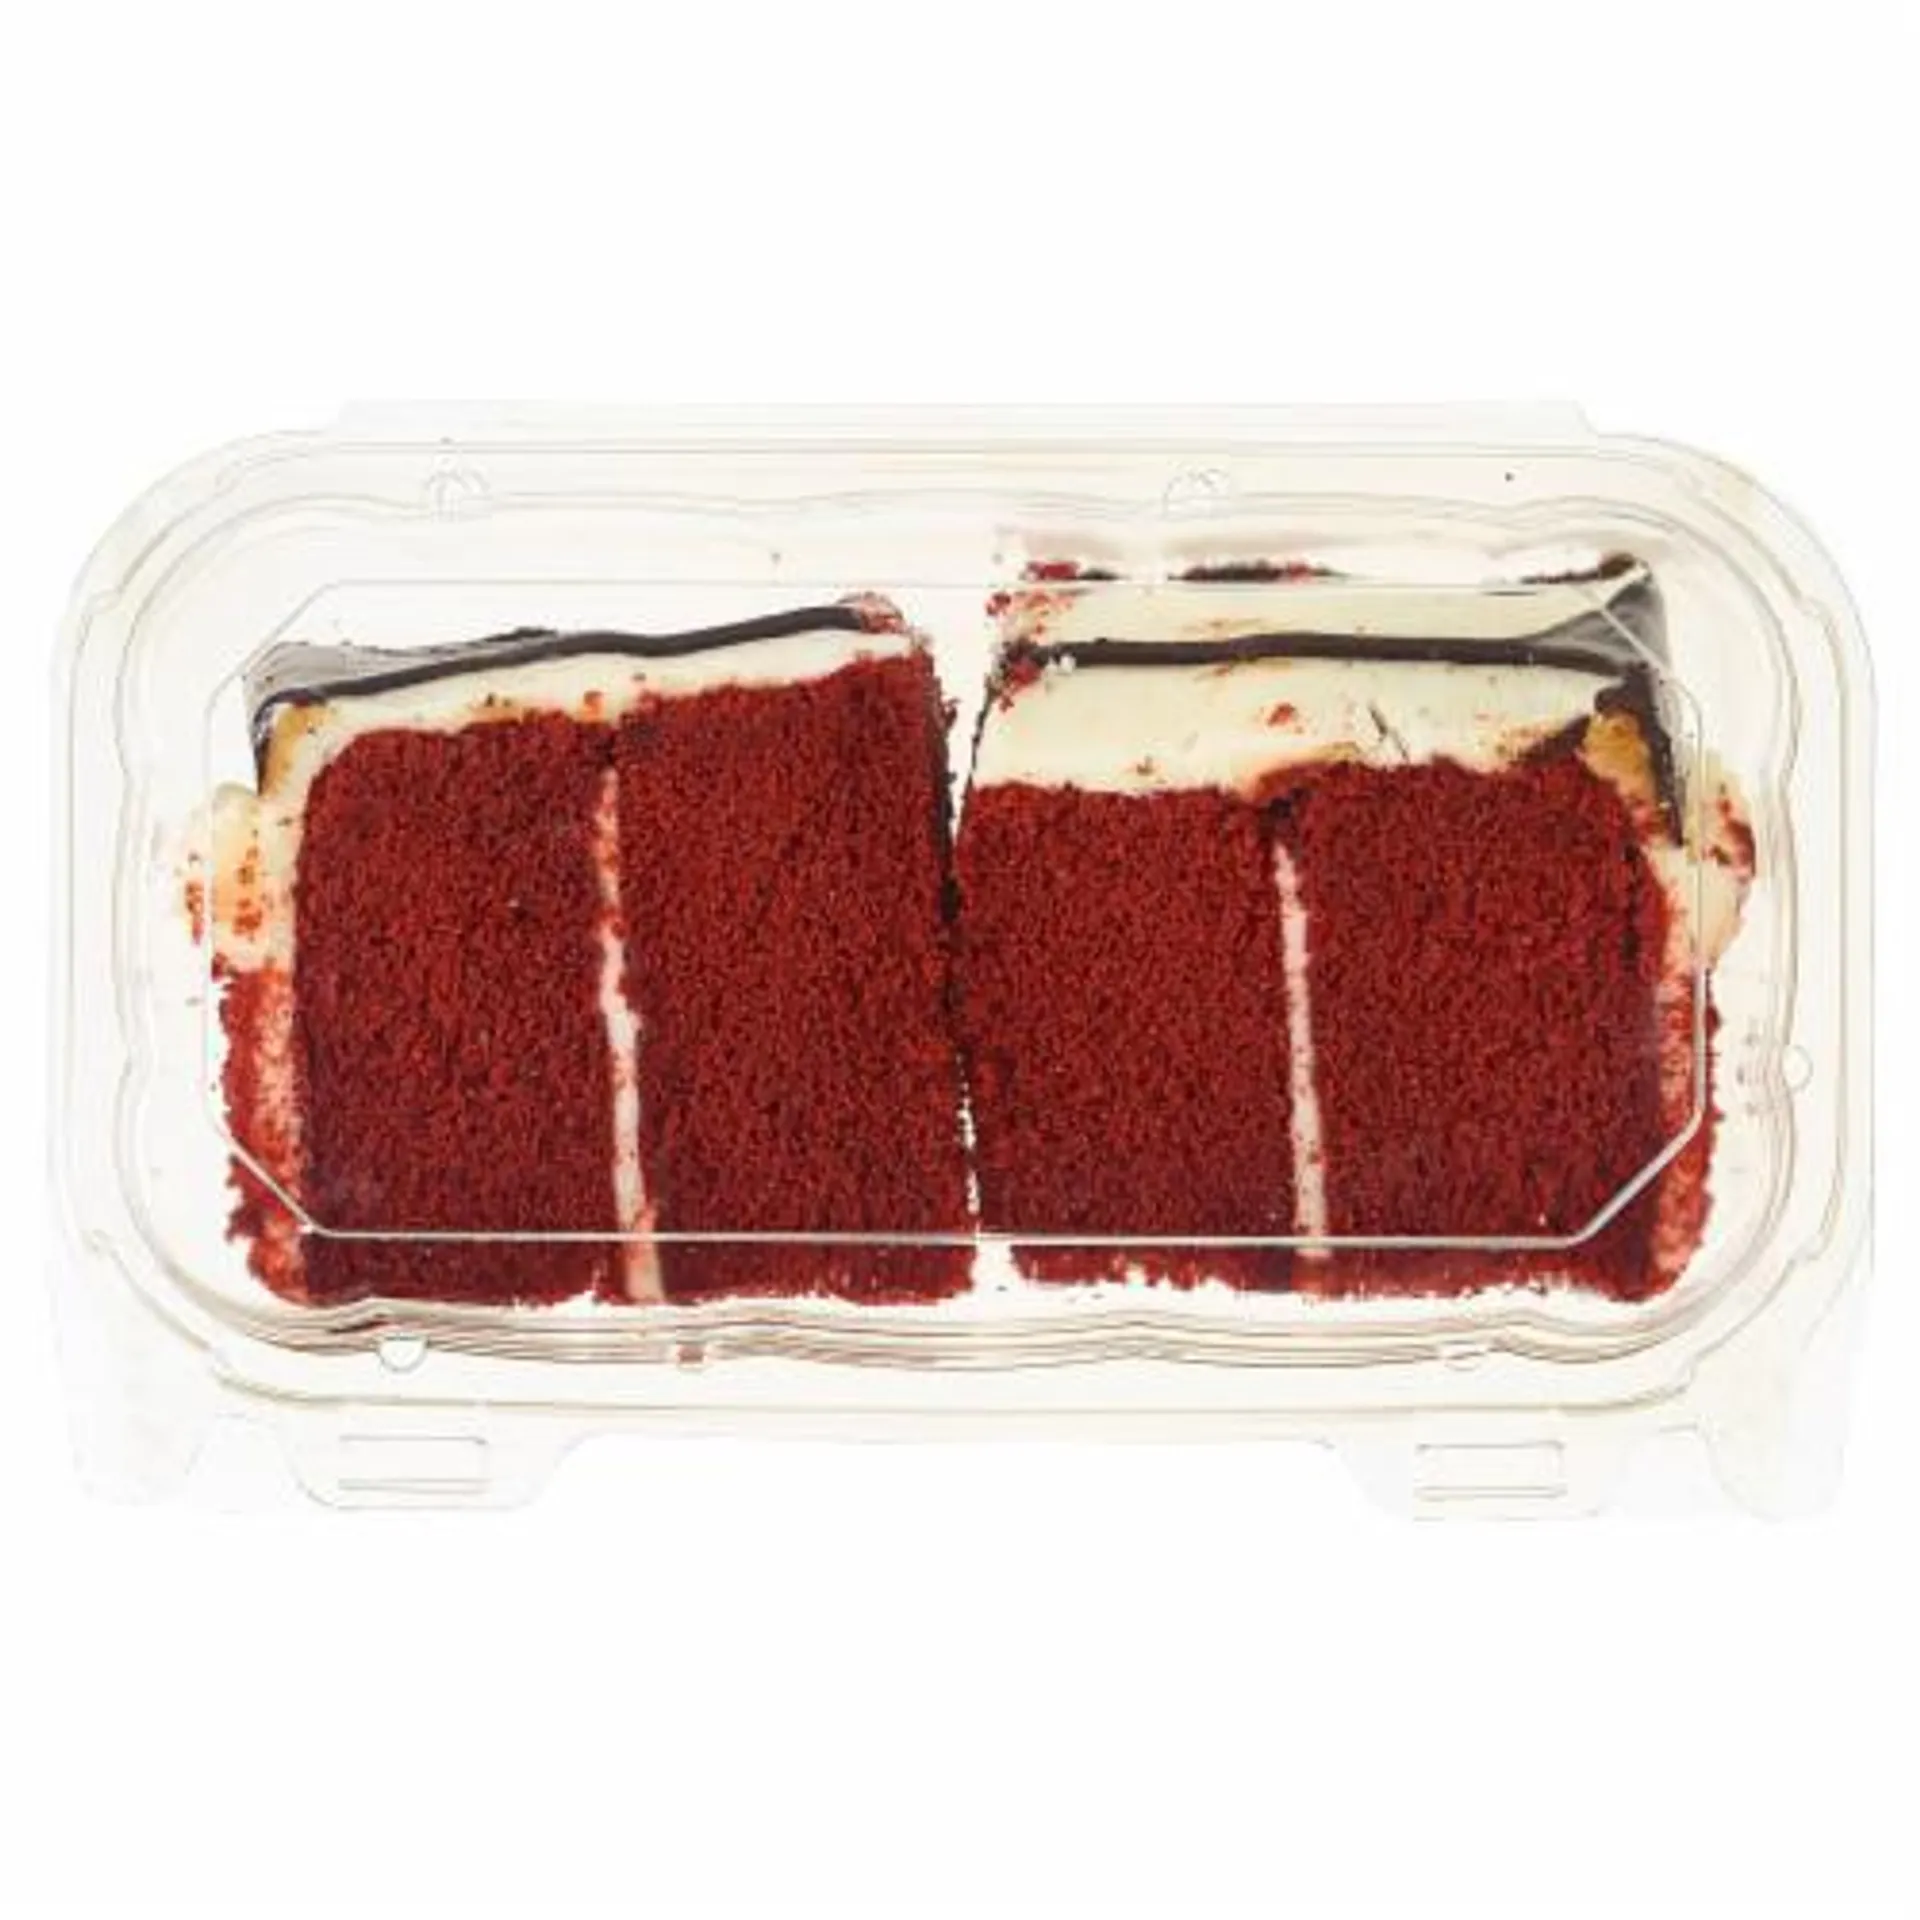 Bakery Fresh Goodness Red Velvet Cake Slices